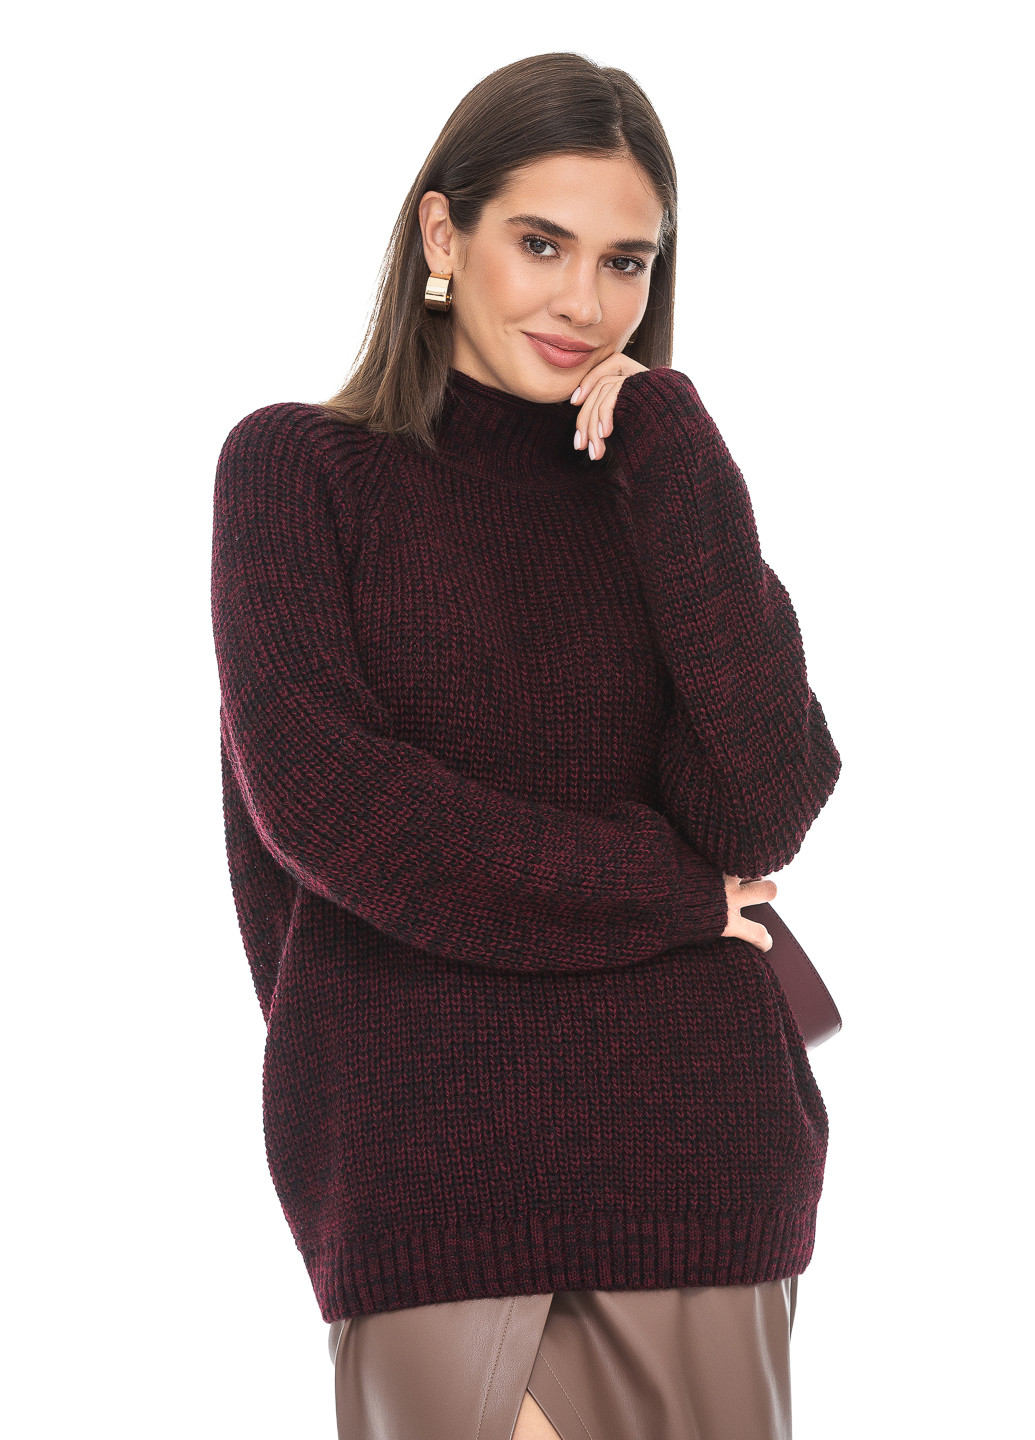 Бордовый меланжевый свитер крупной вязки. SVTR